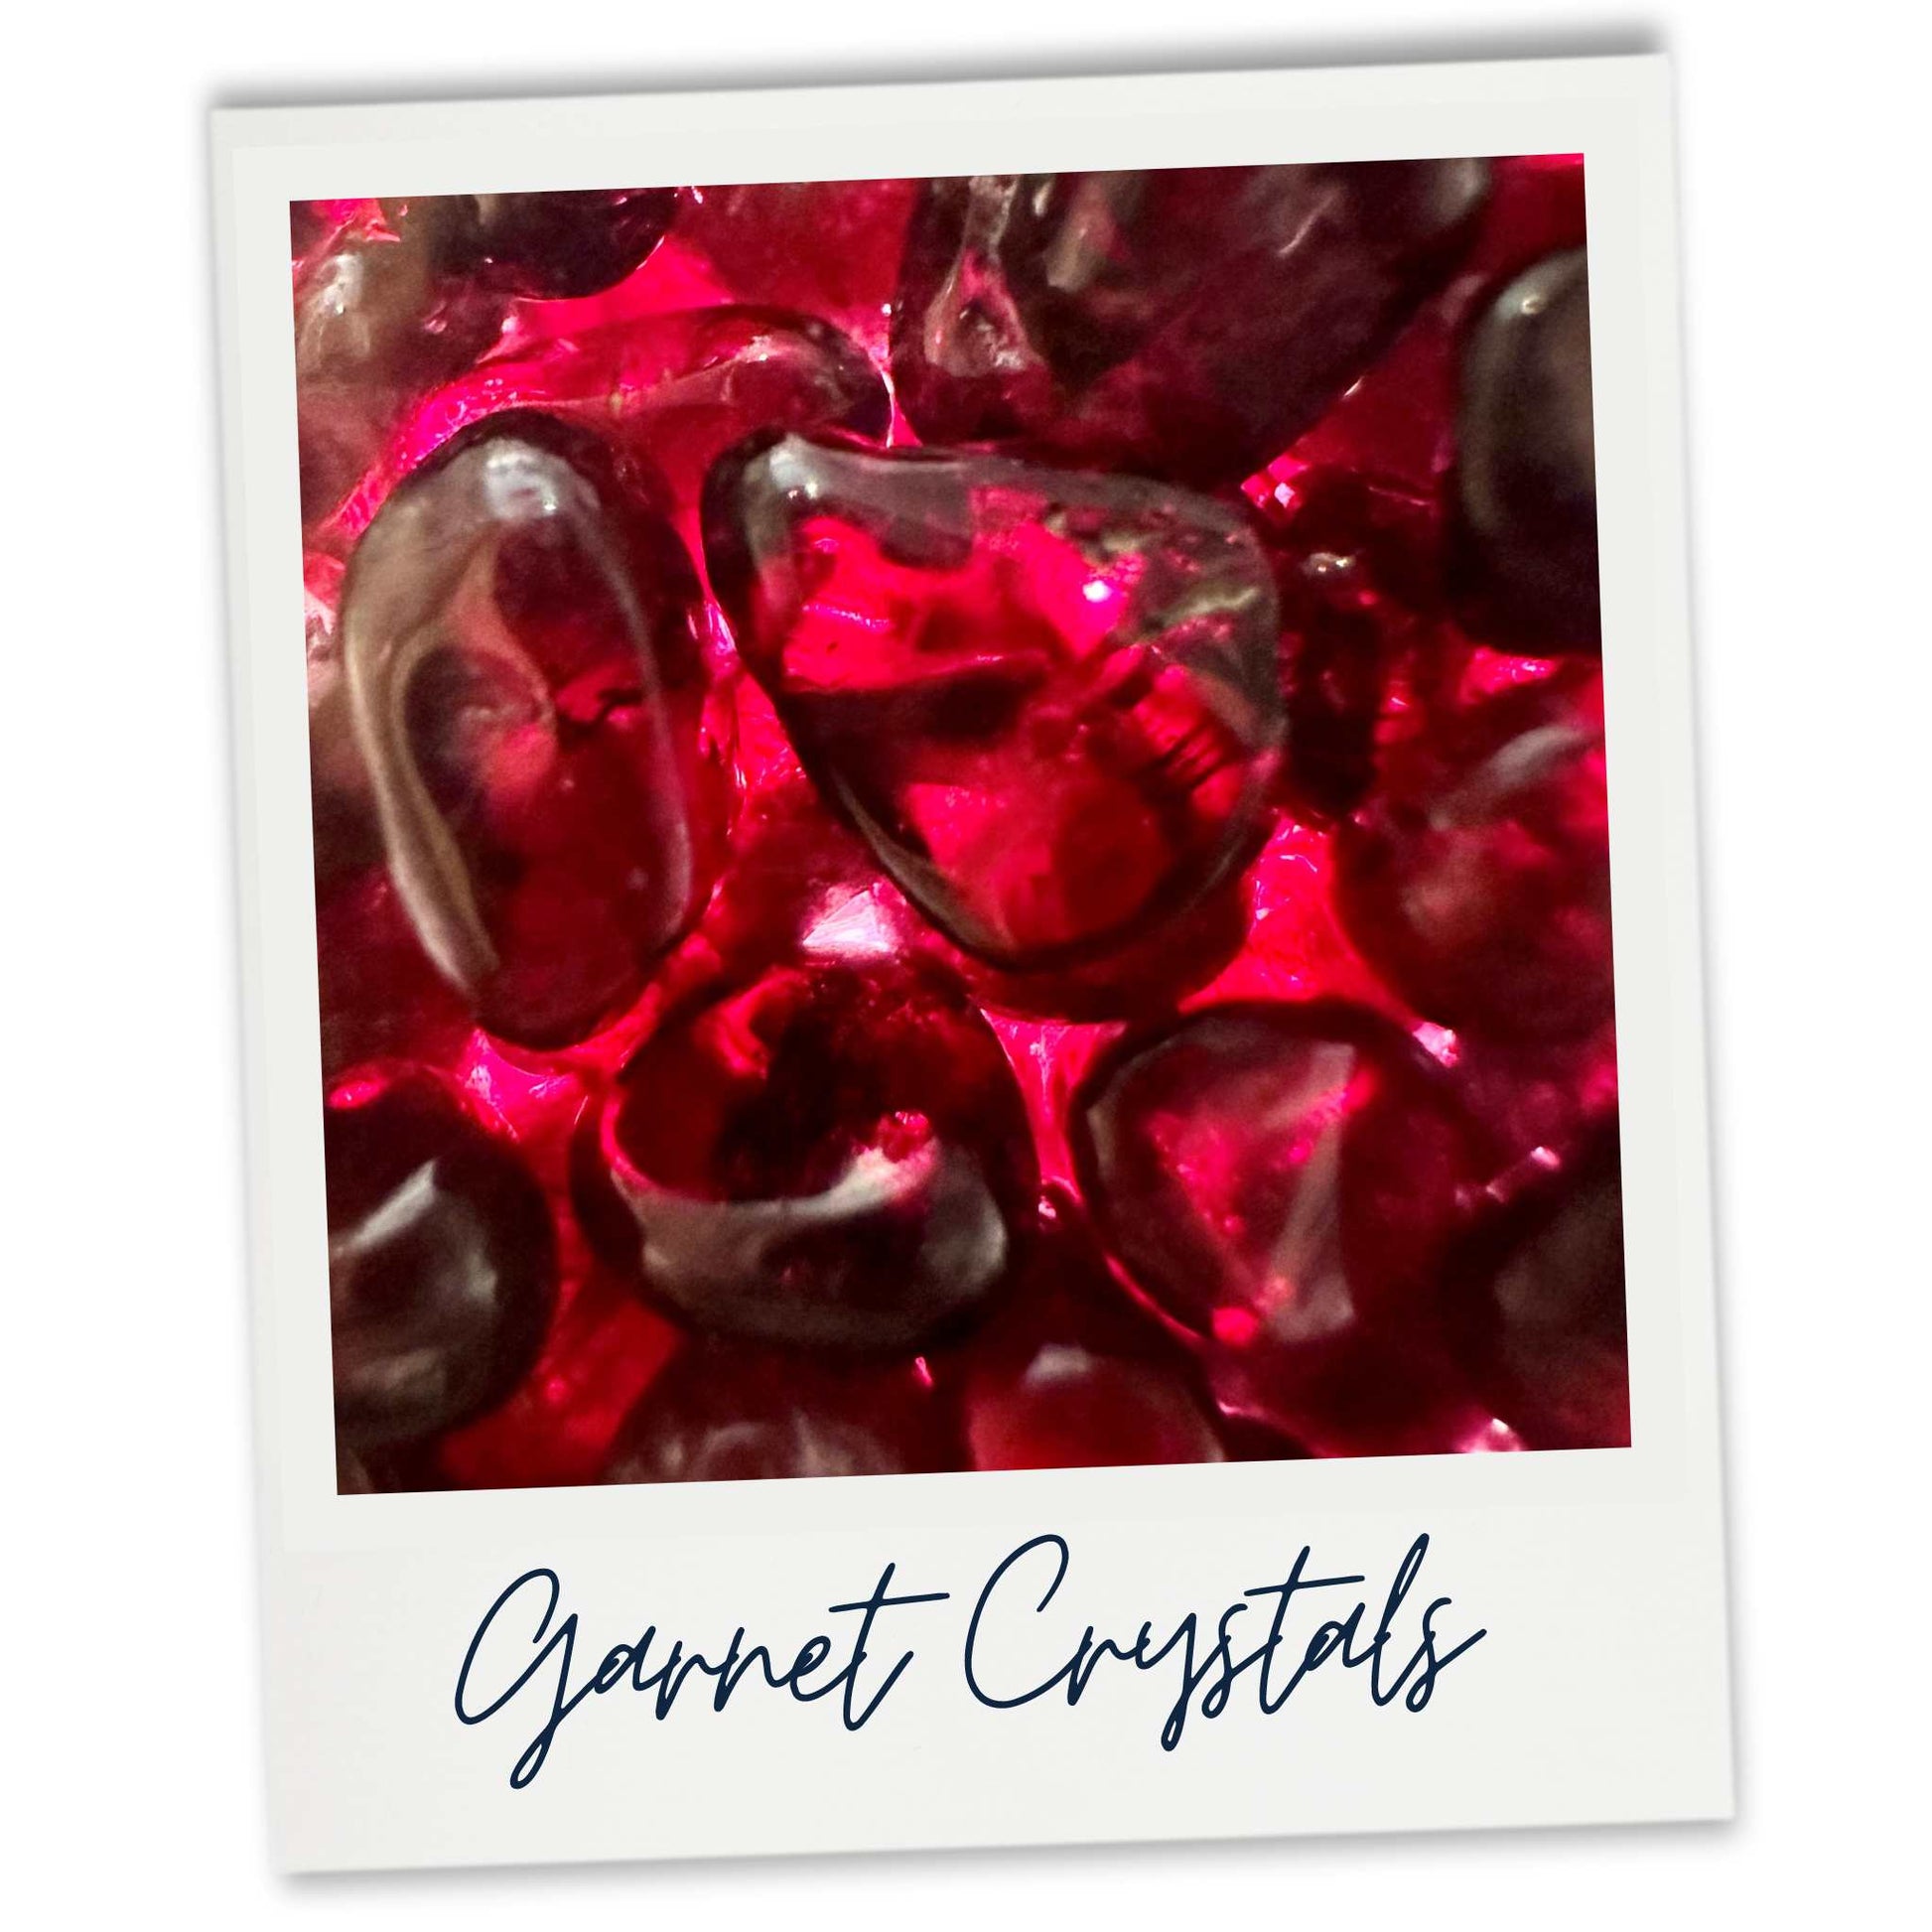 Garnet crystal gems used in our Dark Plum and Rhubarb wax melts